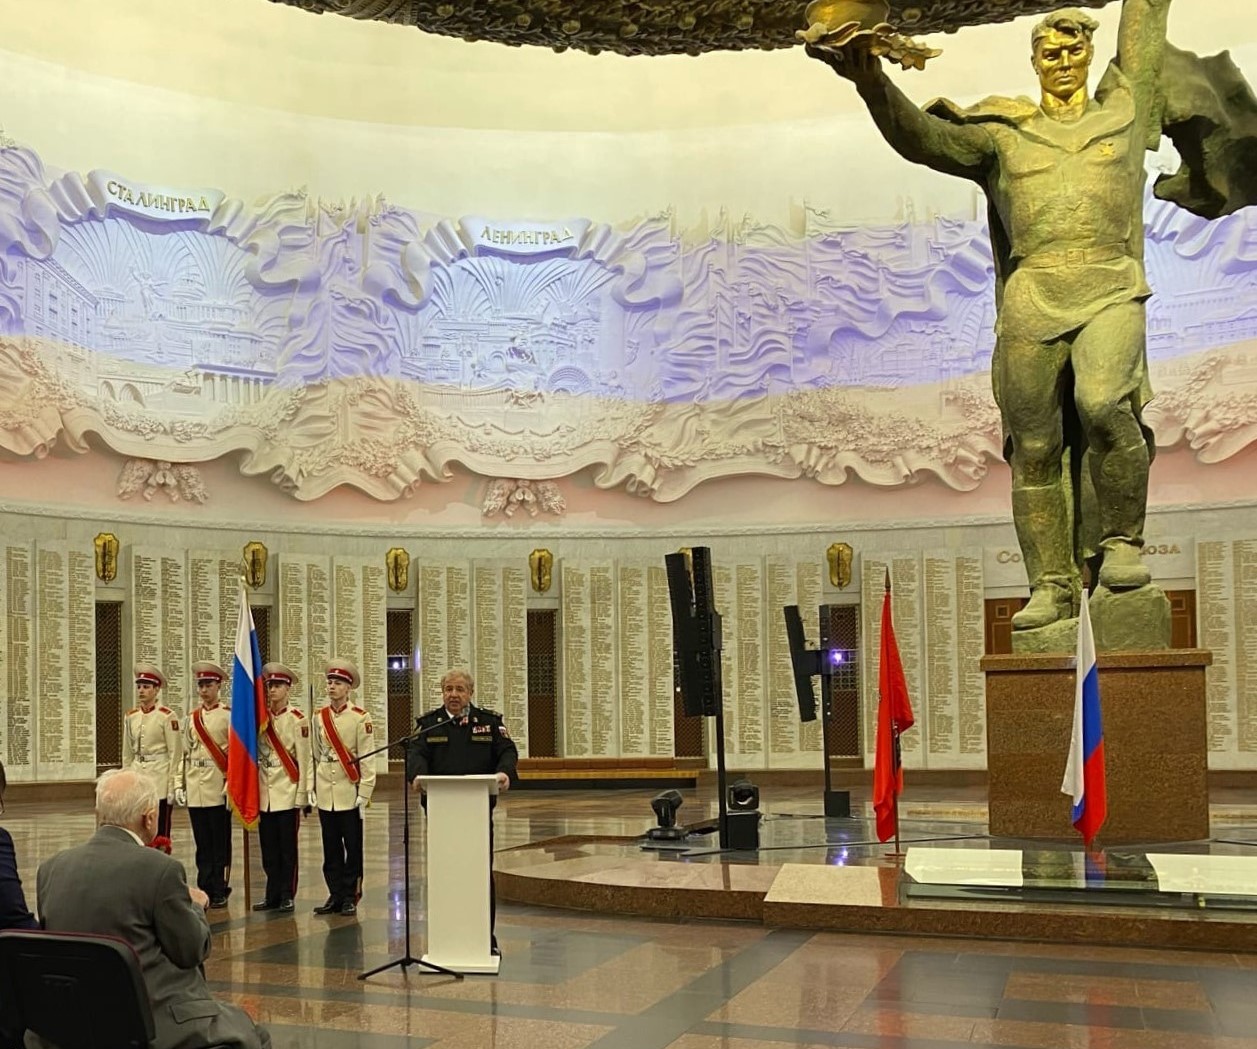 Студенты ИЭиК участвовали в проведении торжественного заседания, посвященного 80-летию завершения победоносной битвы за Москву